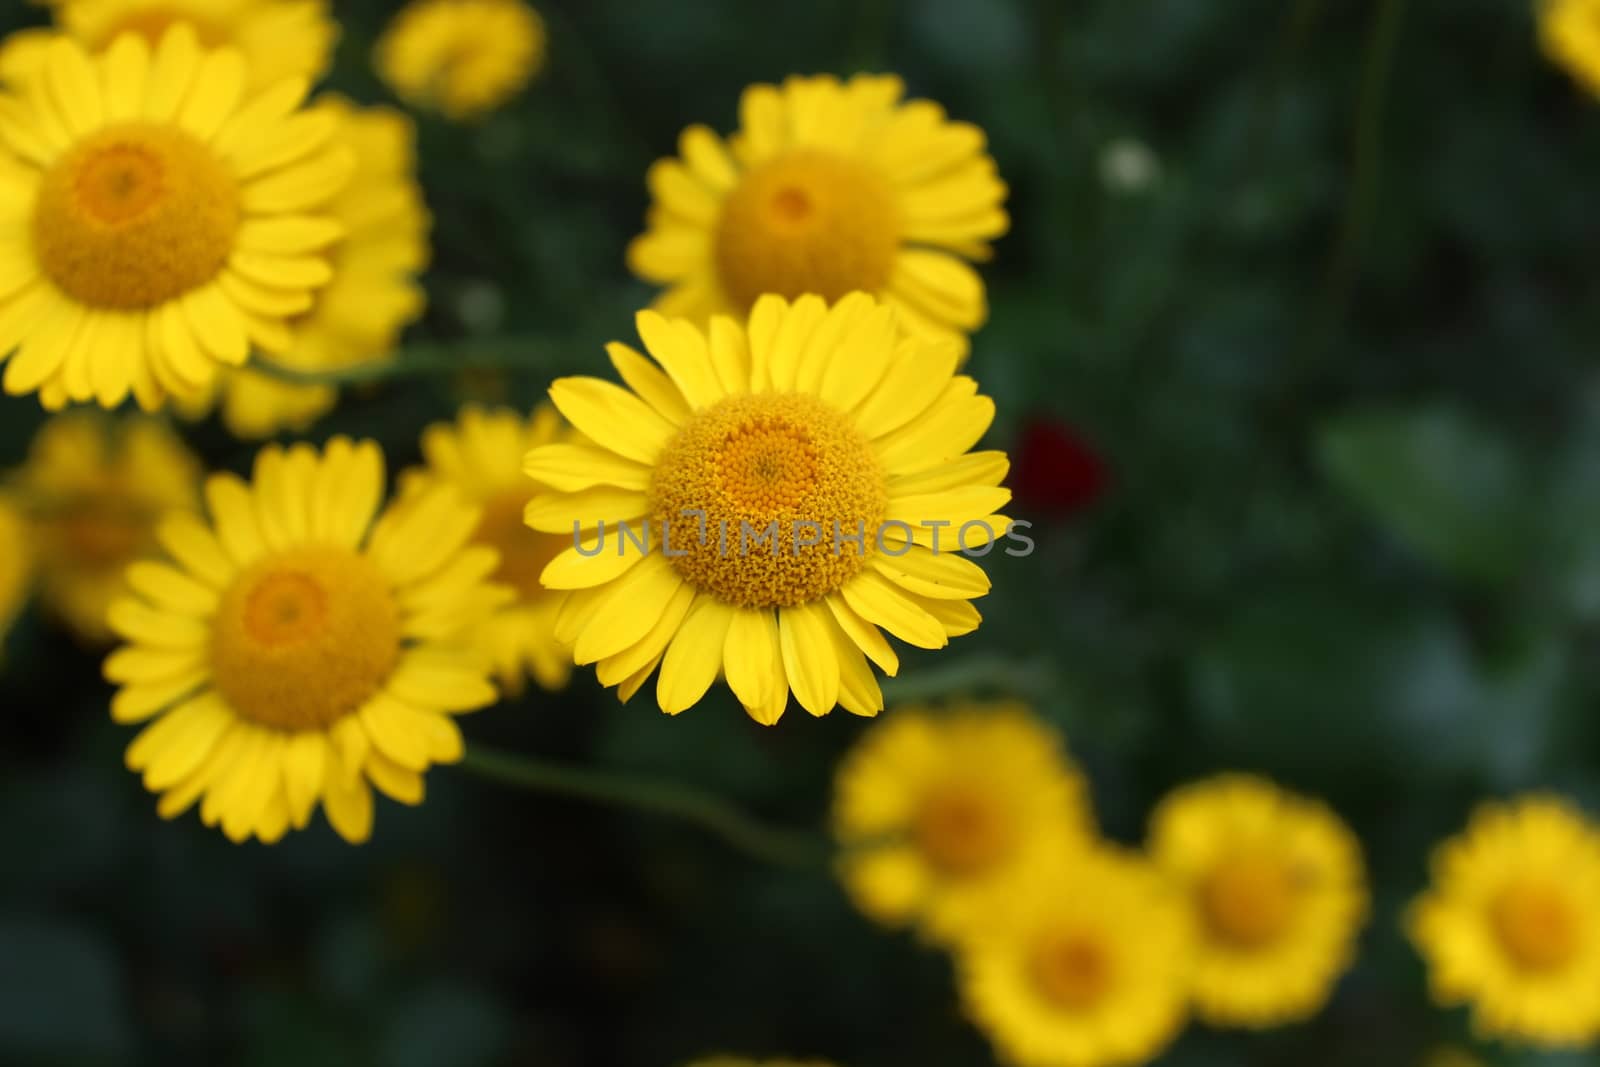 Yellow flowers in the garden by martina_unbehauen